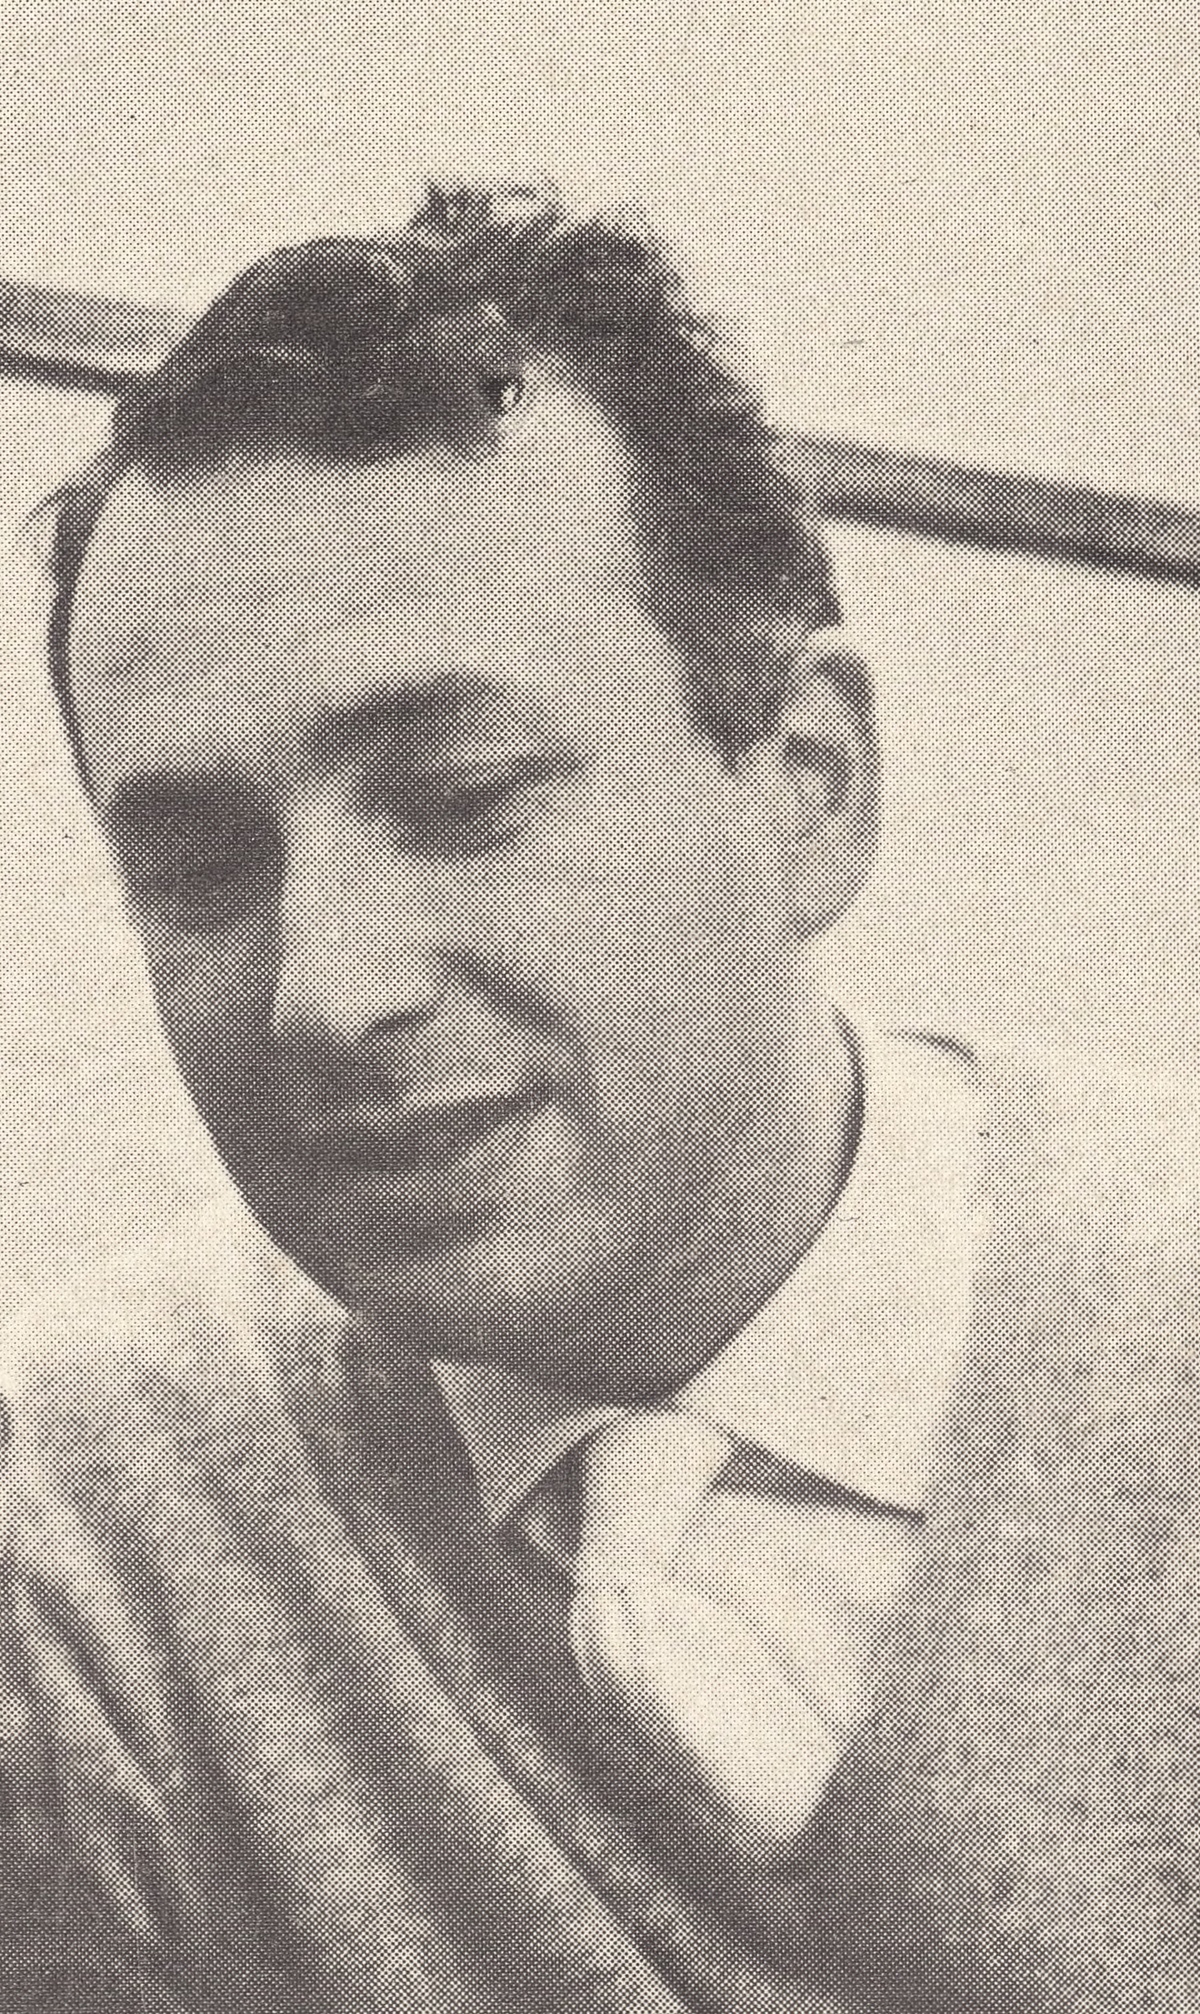 Maurice GENDRON, extrait d'un portrait fait par DON HUNSTEIN publié en 1961 au recto de la pochette du disque Epic LC 3817